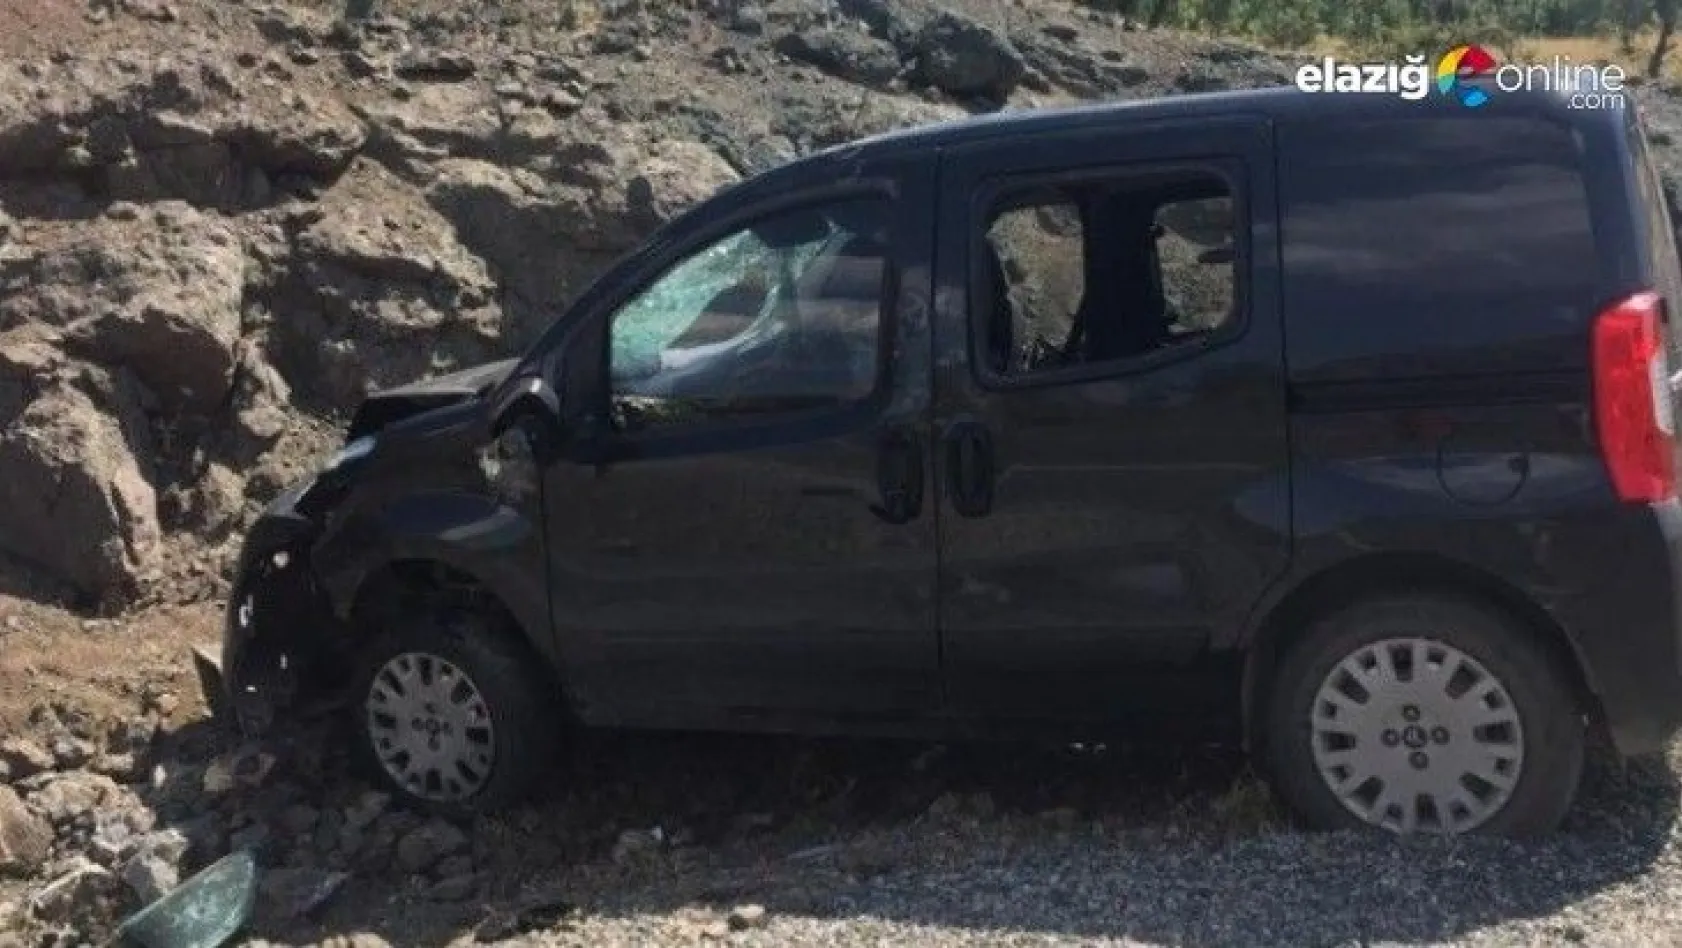 Elazığ'da trafik kazası: 1 ölü, 4 yaralı!